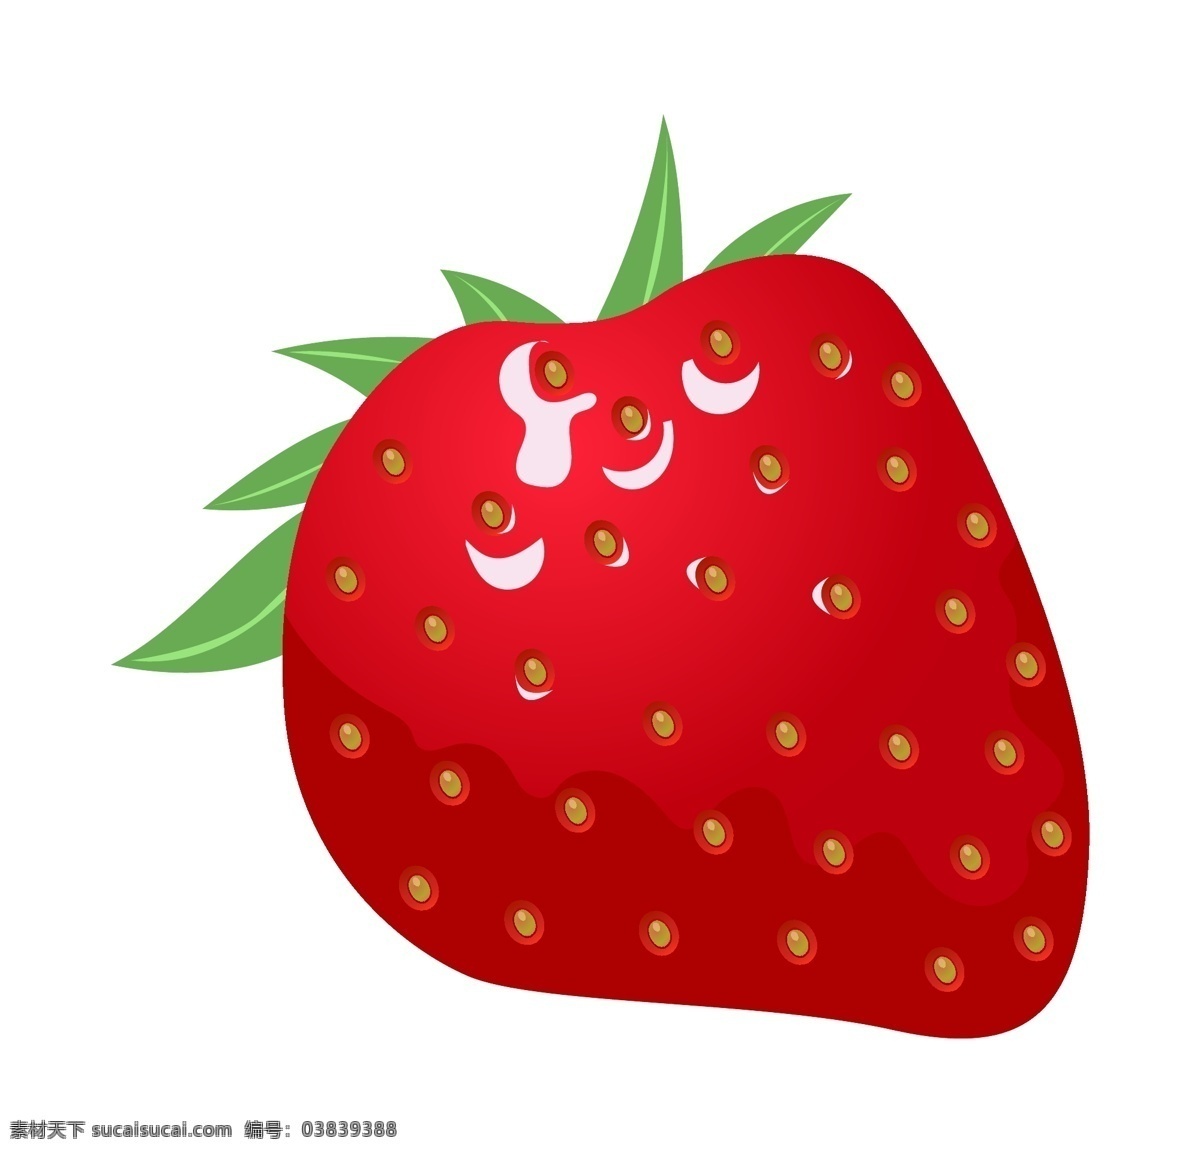 手绘 红色 草莓 插画 手绘草莓 红色草莓插画 绿色的叶子 新鲜的草莓 仿真草莓 甜甜的草莓 卡通草莓 水果 食物